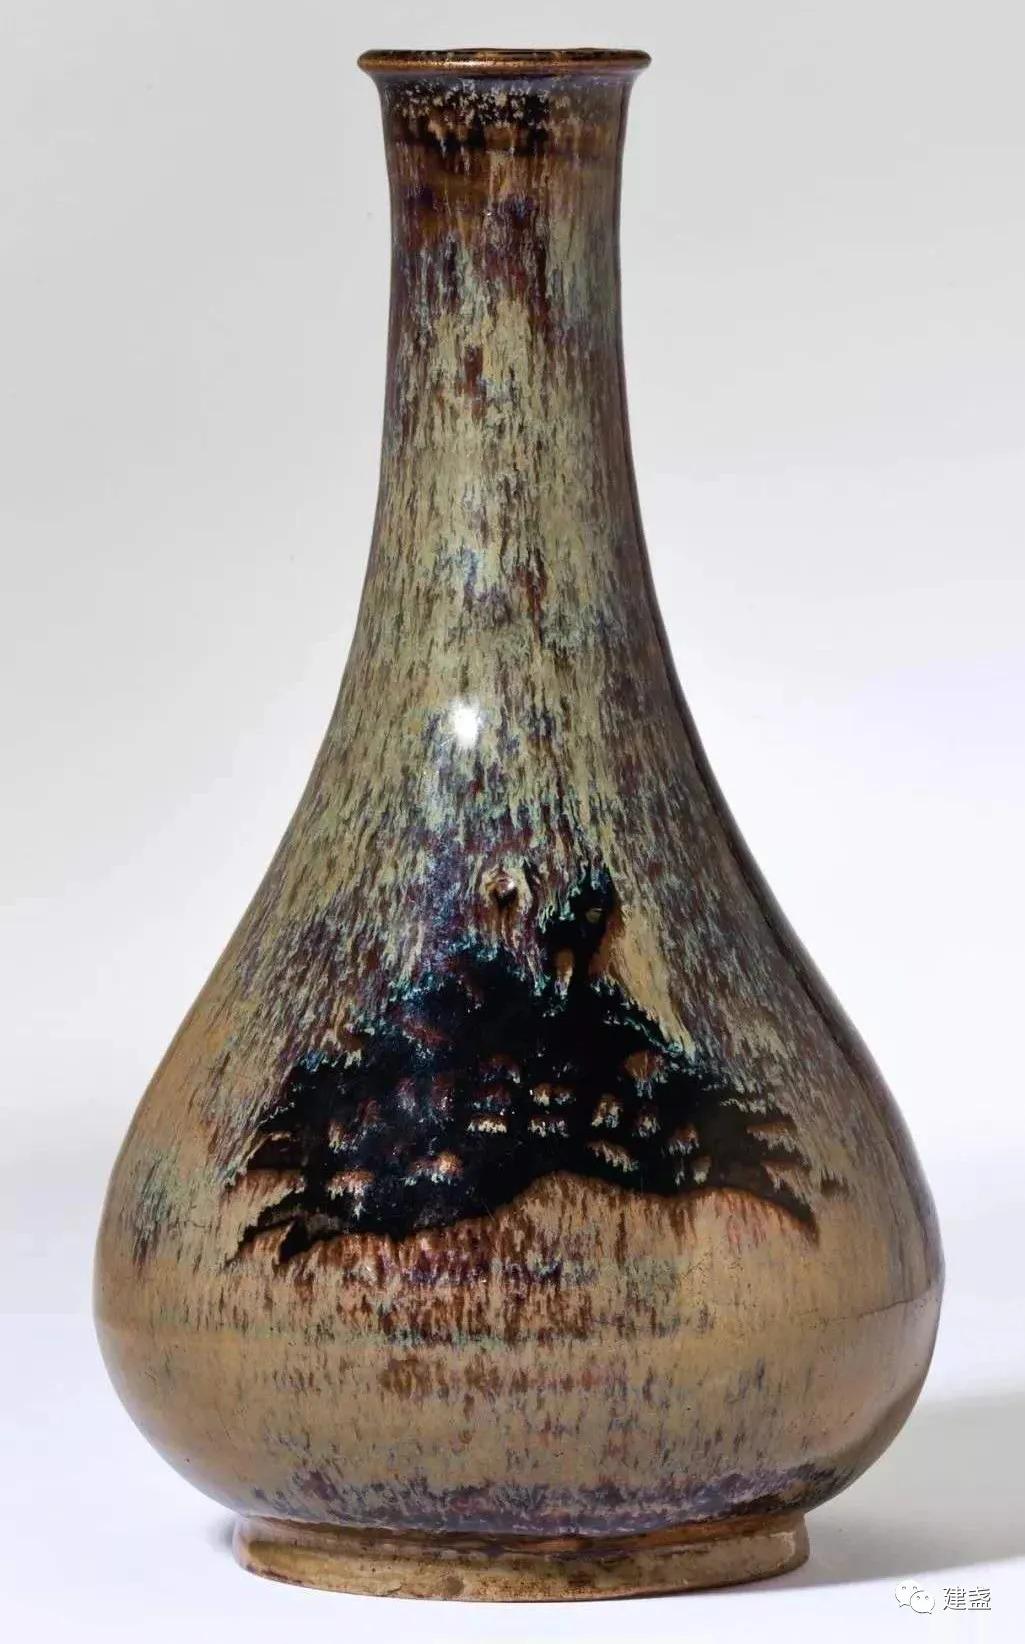 宋代瓷器花瓶能提高插花美感吗？56图欣赏宋代传世美瓶